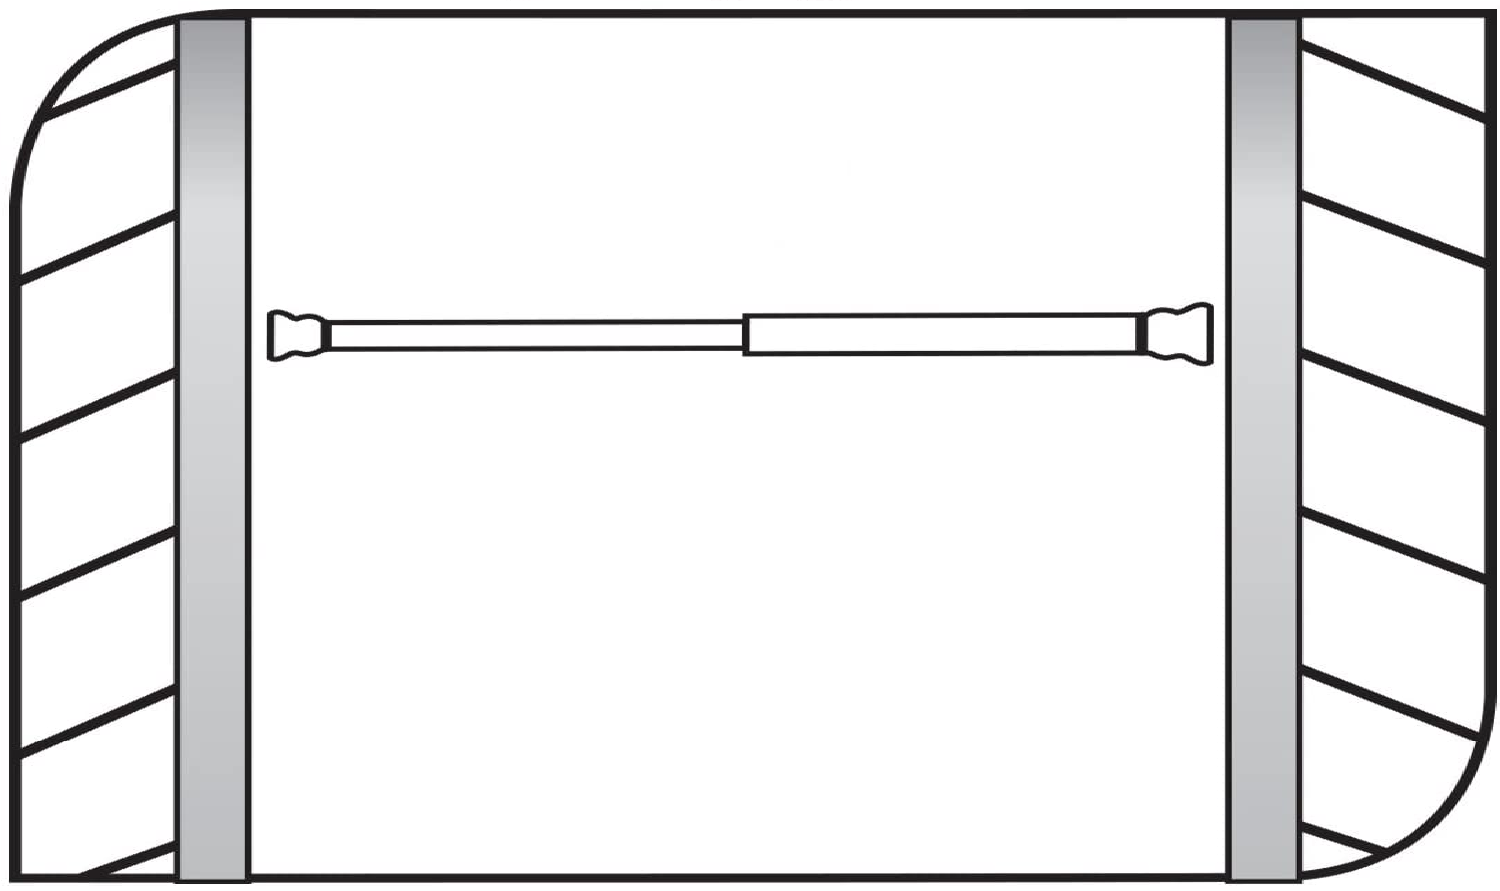 Duschvorhangstange Ø 19 mm ausziehbar von 70-115 cm, Aluminium, chrom